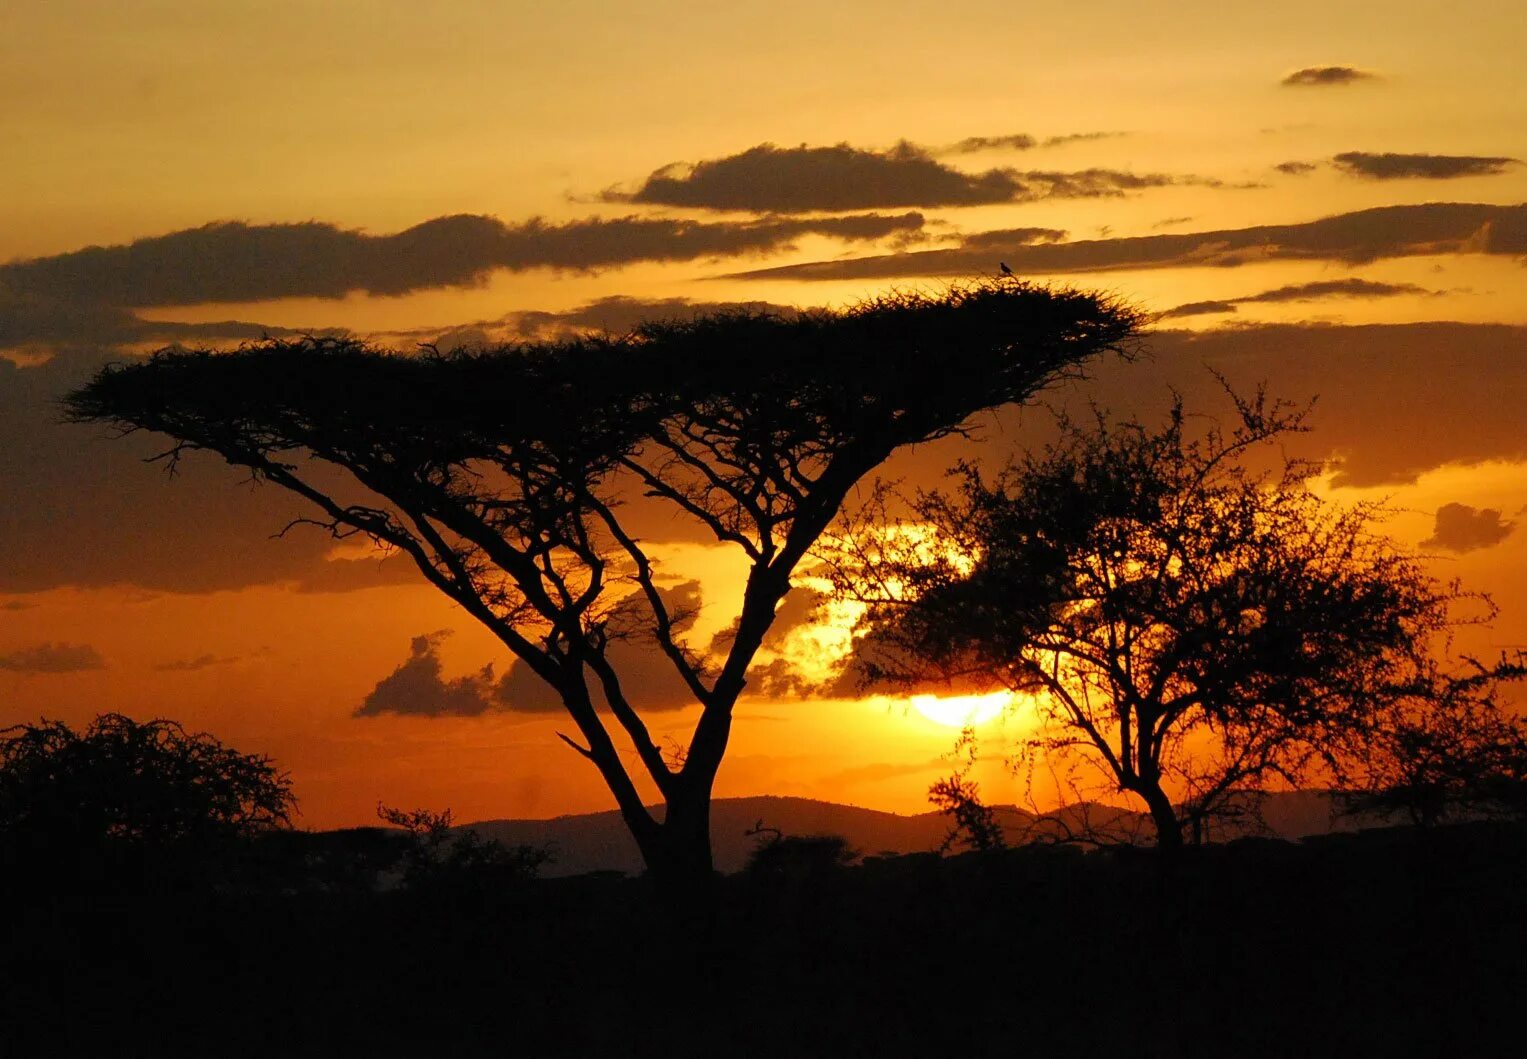 Саванной восточной африки. Саванна Серенгети Танзания. Серенгети Танзания ночь. Танзания сафари закат. Парк Серенгети в Африке в Эфиопии.